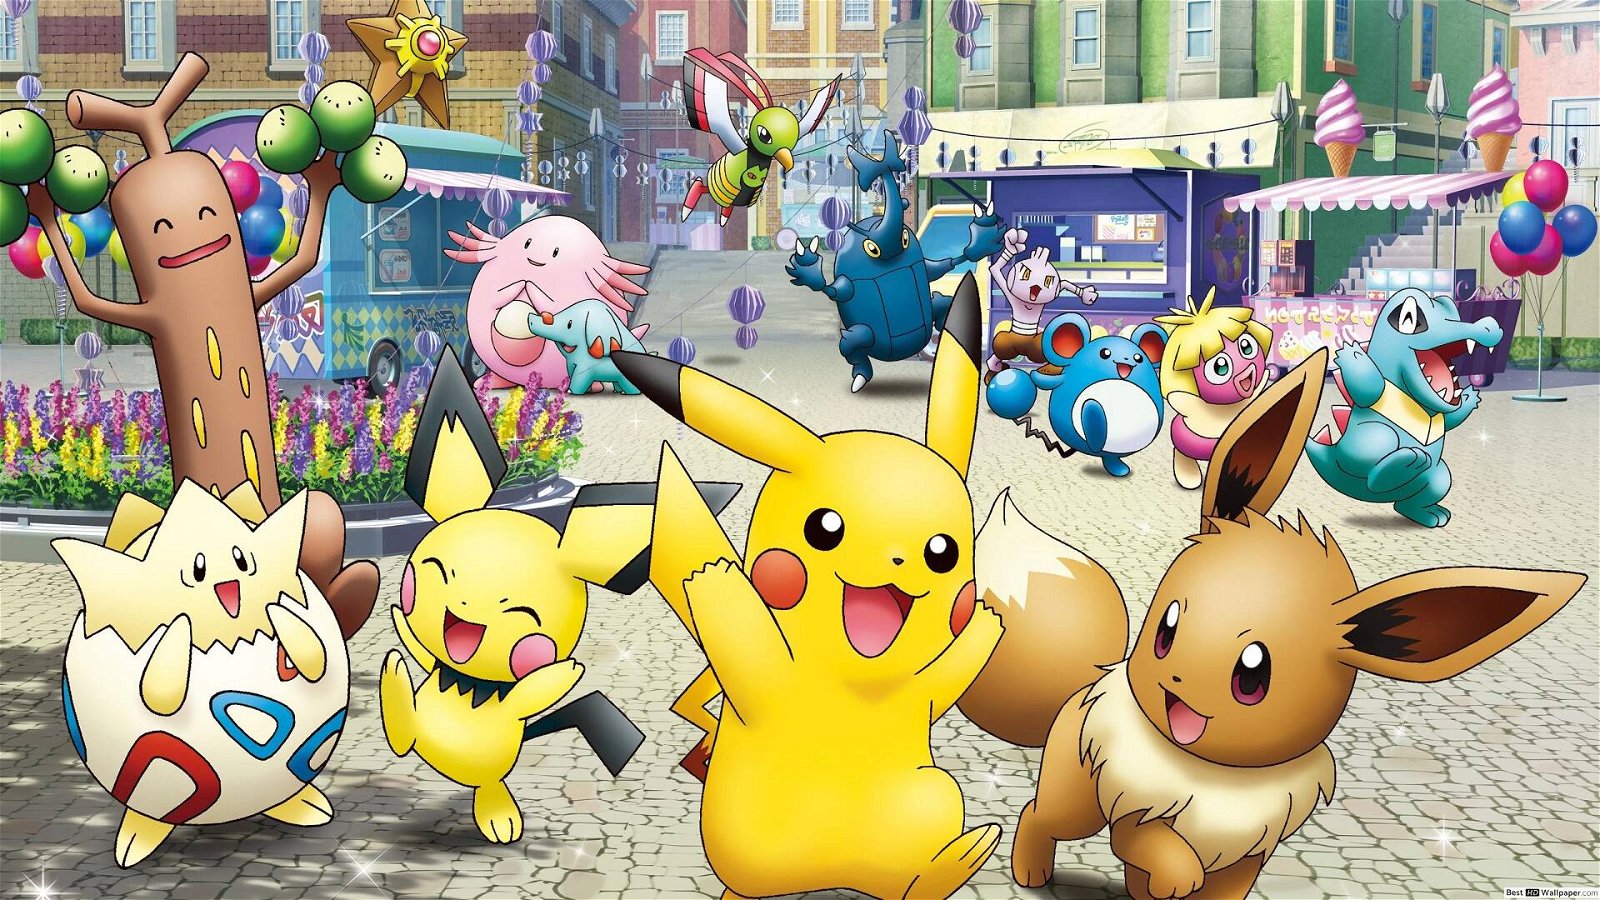 Immagine di Pokémon avrà un gioco in Italia, la teoria fa impazzire i fan